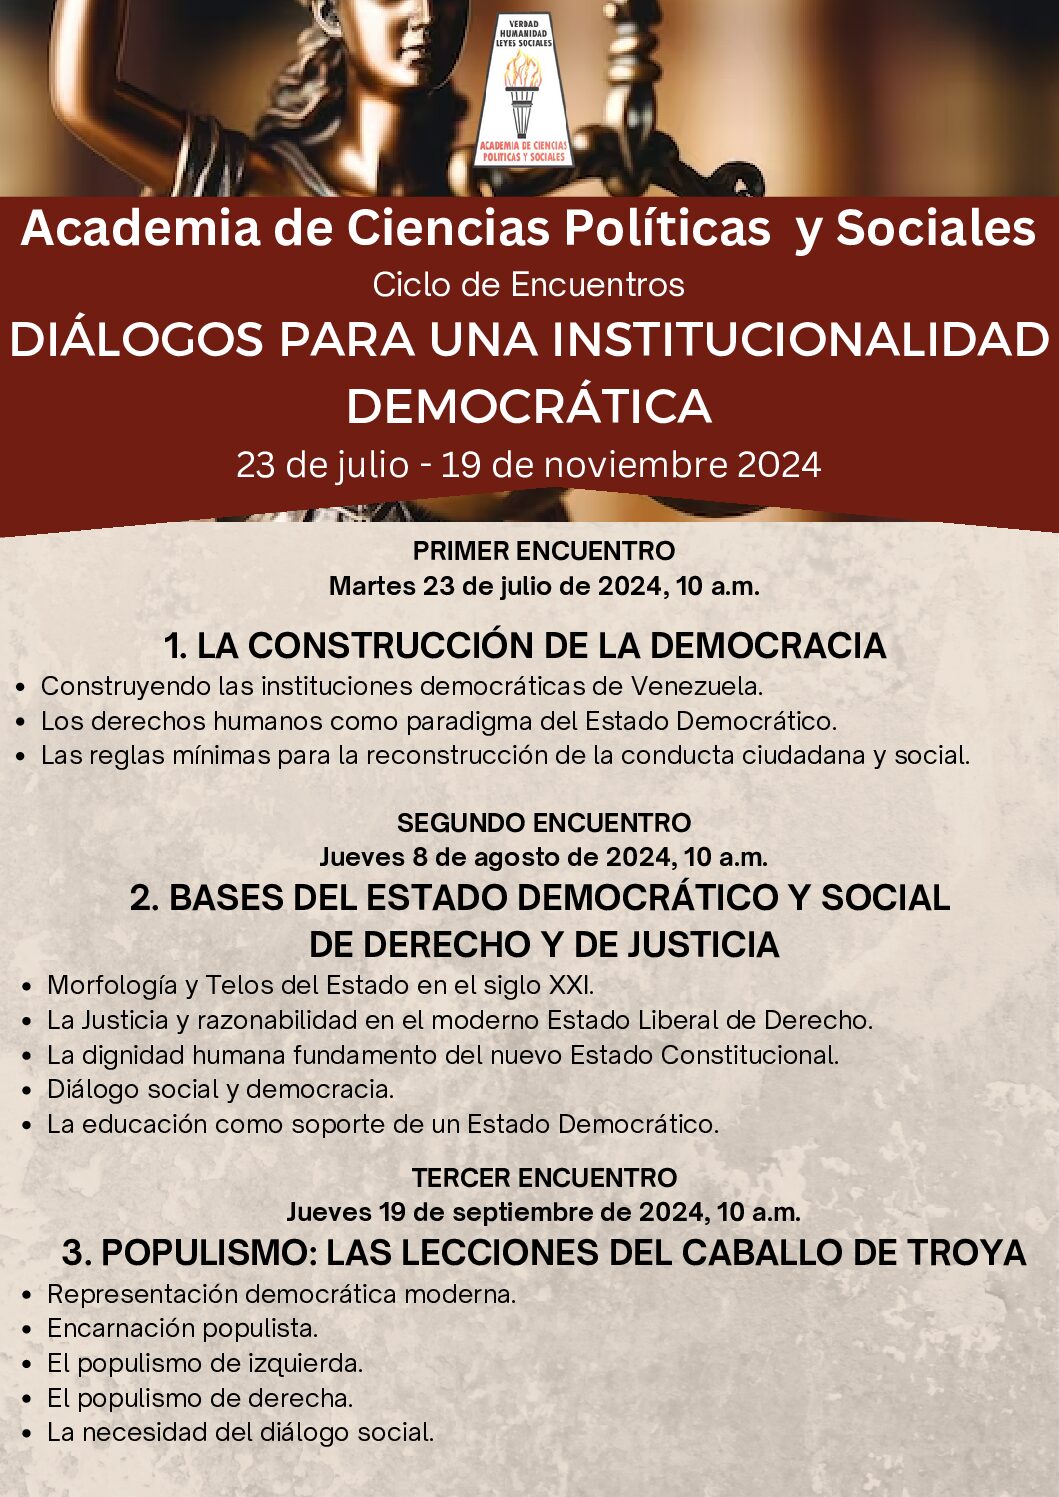 Ciclo de Encuentros: Diálogos para una institucionalidad democrática. Del 23 de julio al 19 de noviembre de 2024